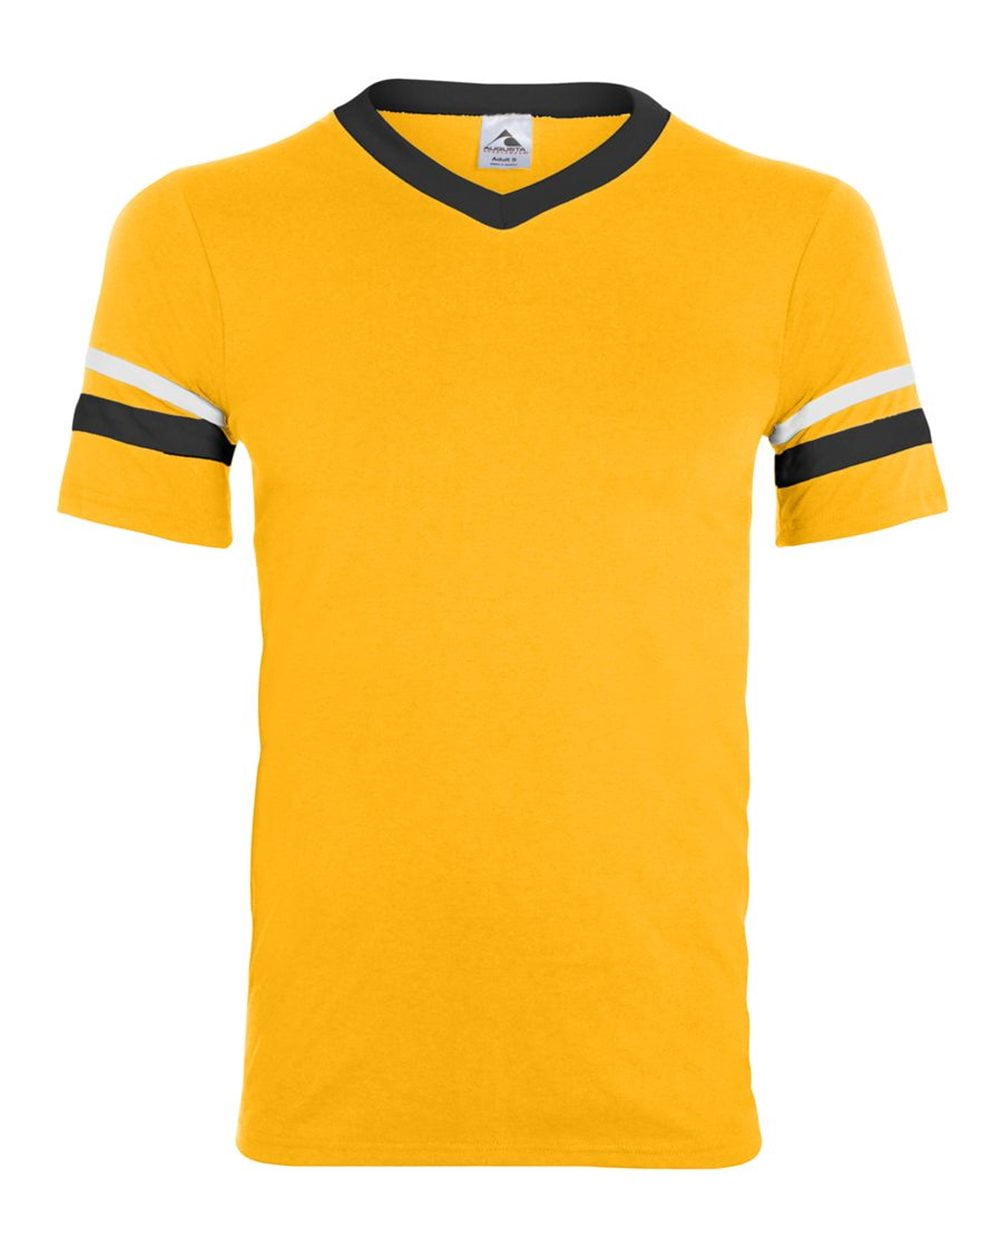 Augusta Sportswear Sleeve Stripe Jersey-PURPLE/GOLD/WHITE-M